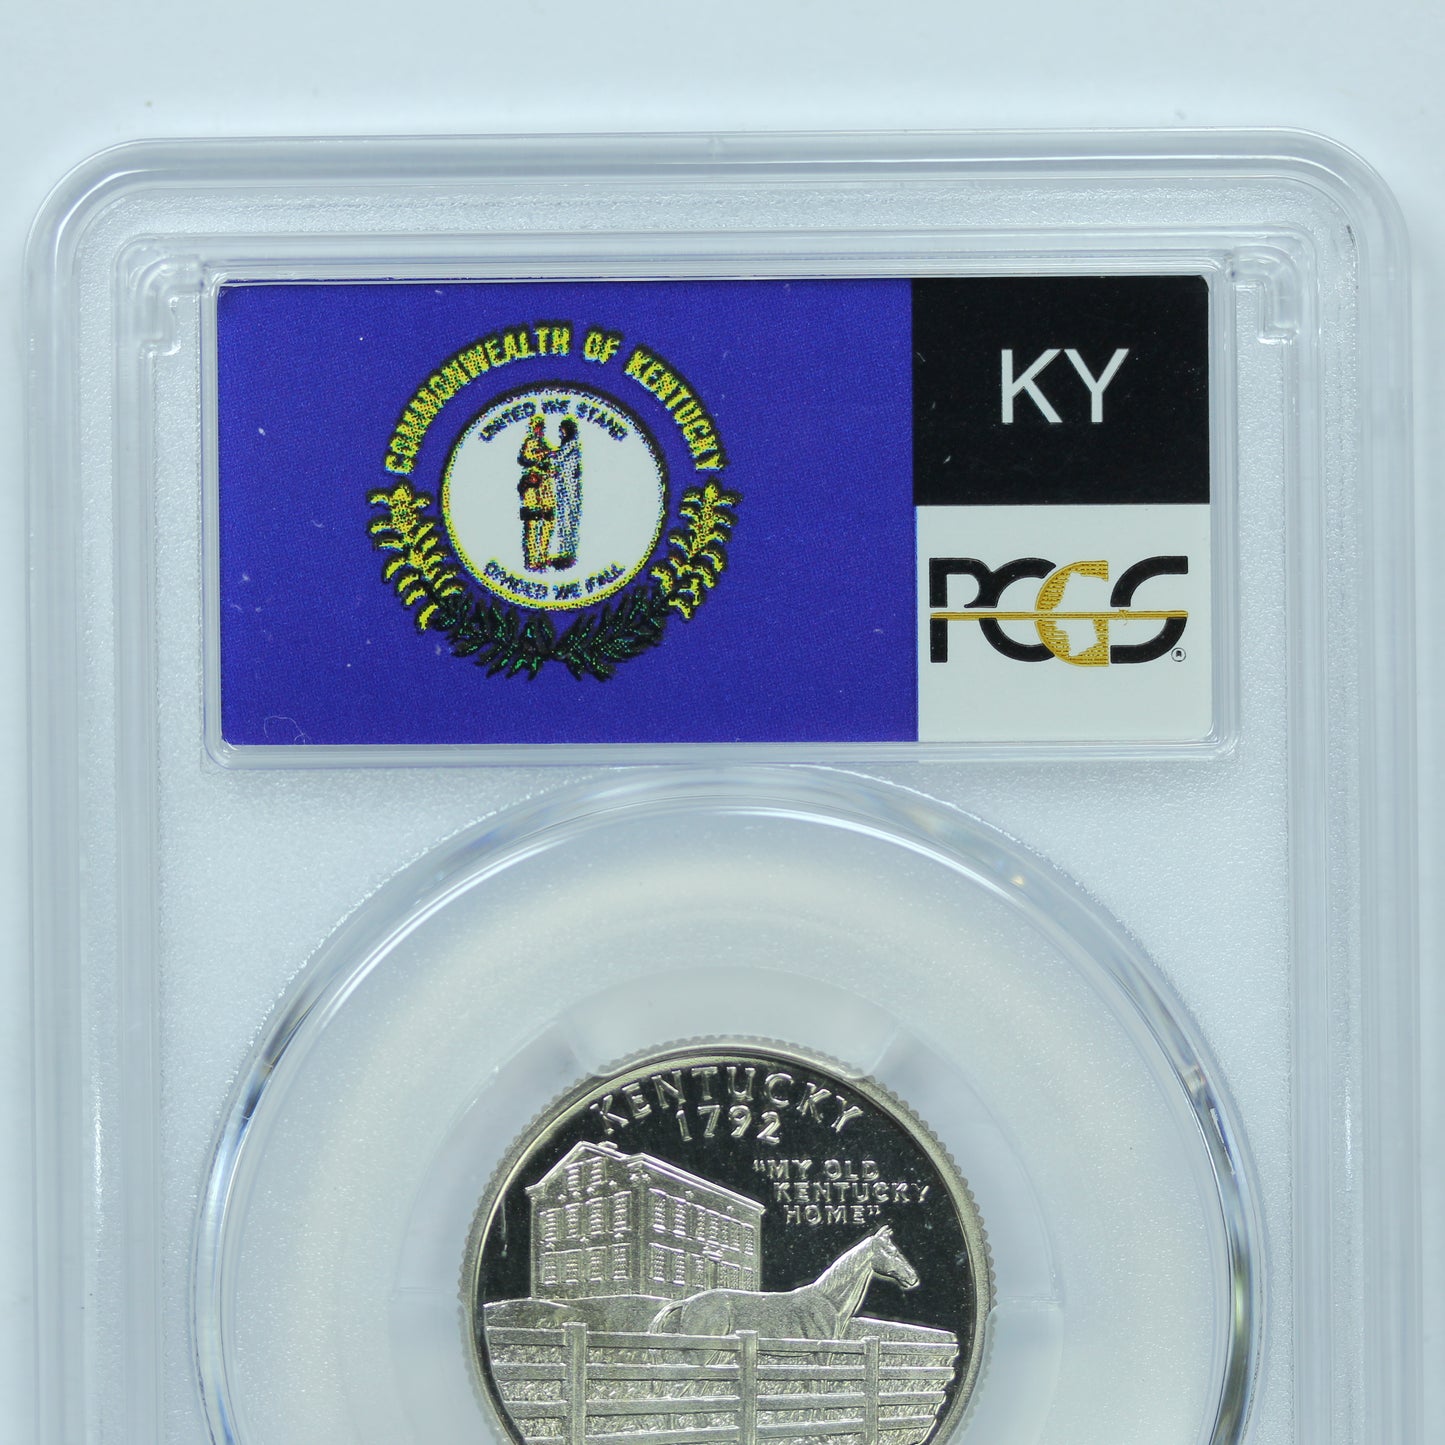 2001 S (San Francisco) 25c Clad Kentucky Quarter - PCGS PR 69 DCAM